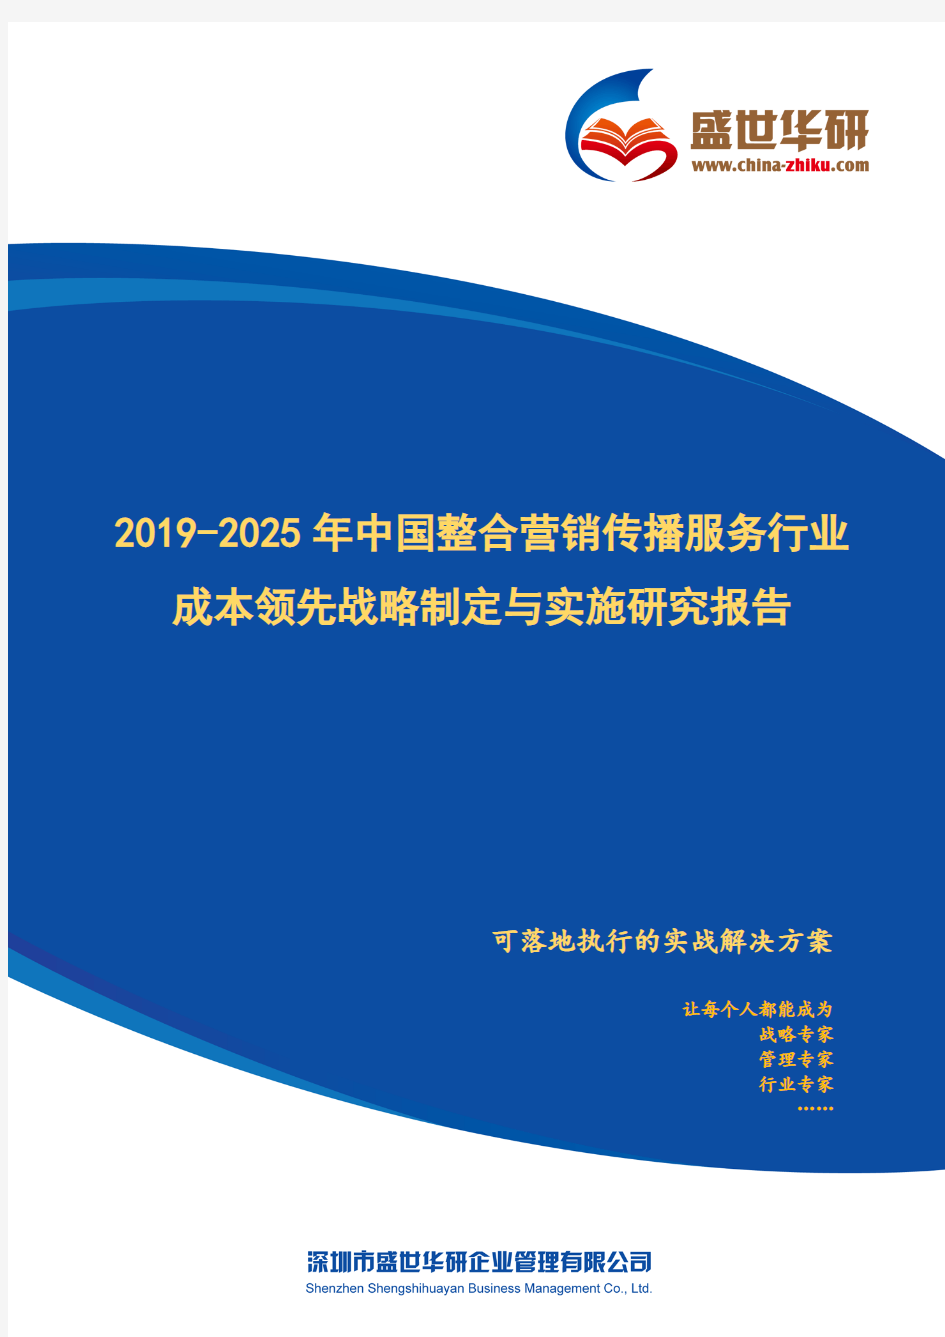 【完整版】2019-2025年中国整合营销传播服务行业成本领先战略制定与实施研究报告